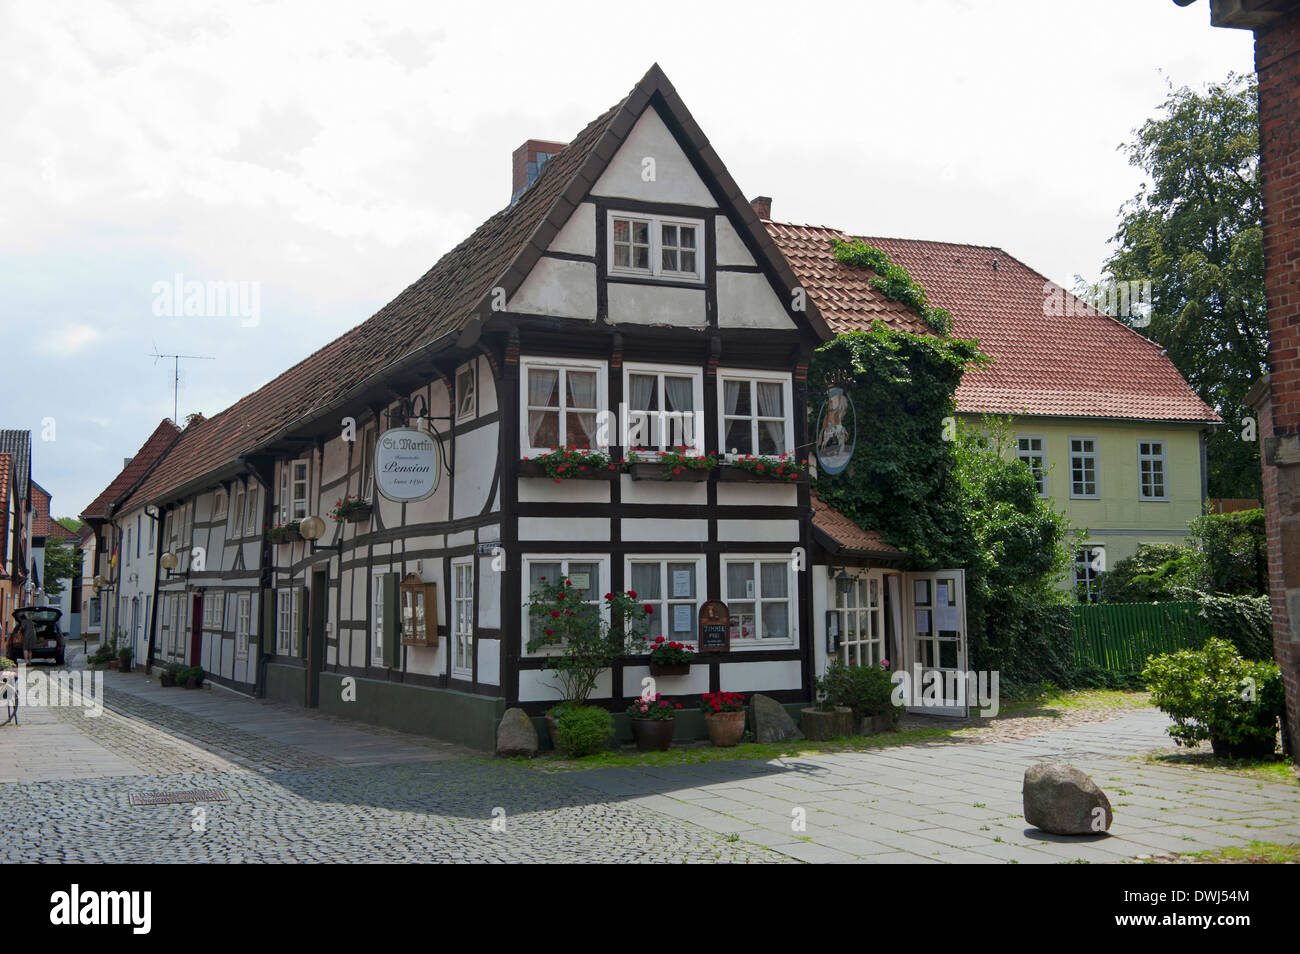 Half-timbered house, Nienburg Stock Photo